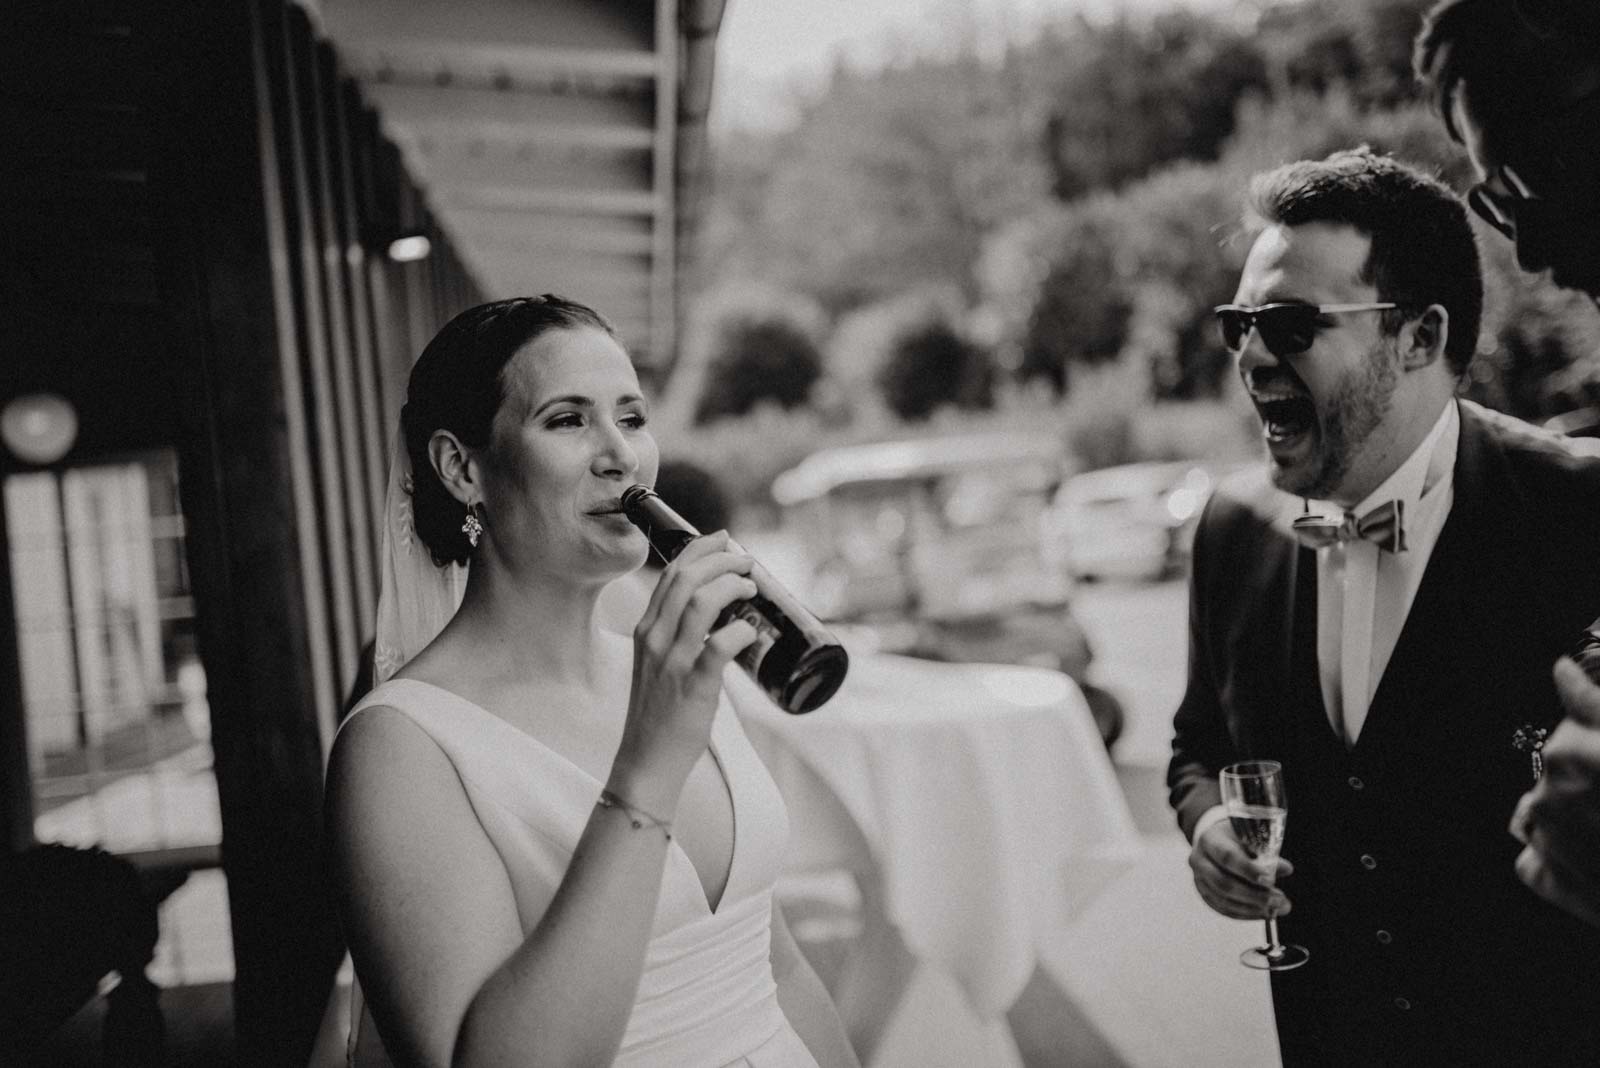 Die Braut trinkt Bier aus der Flasche